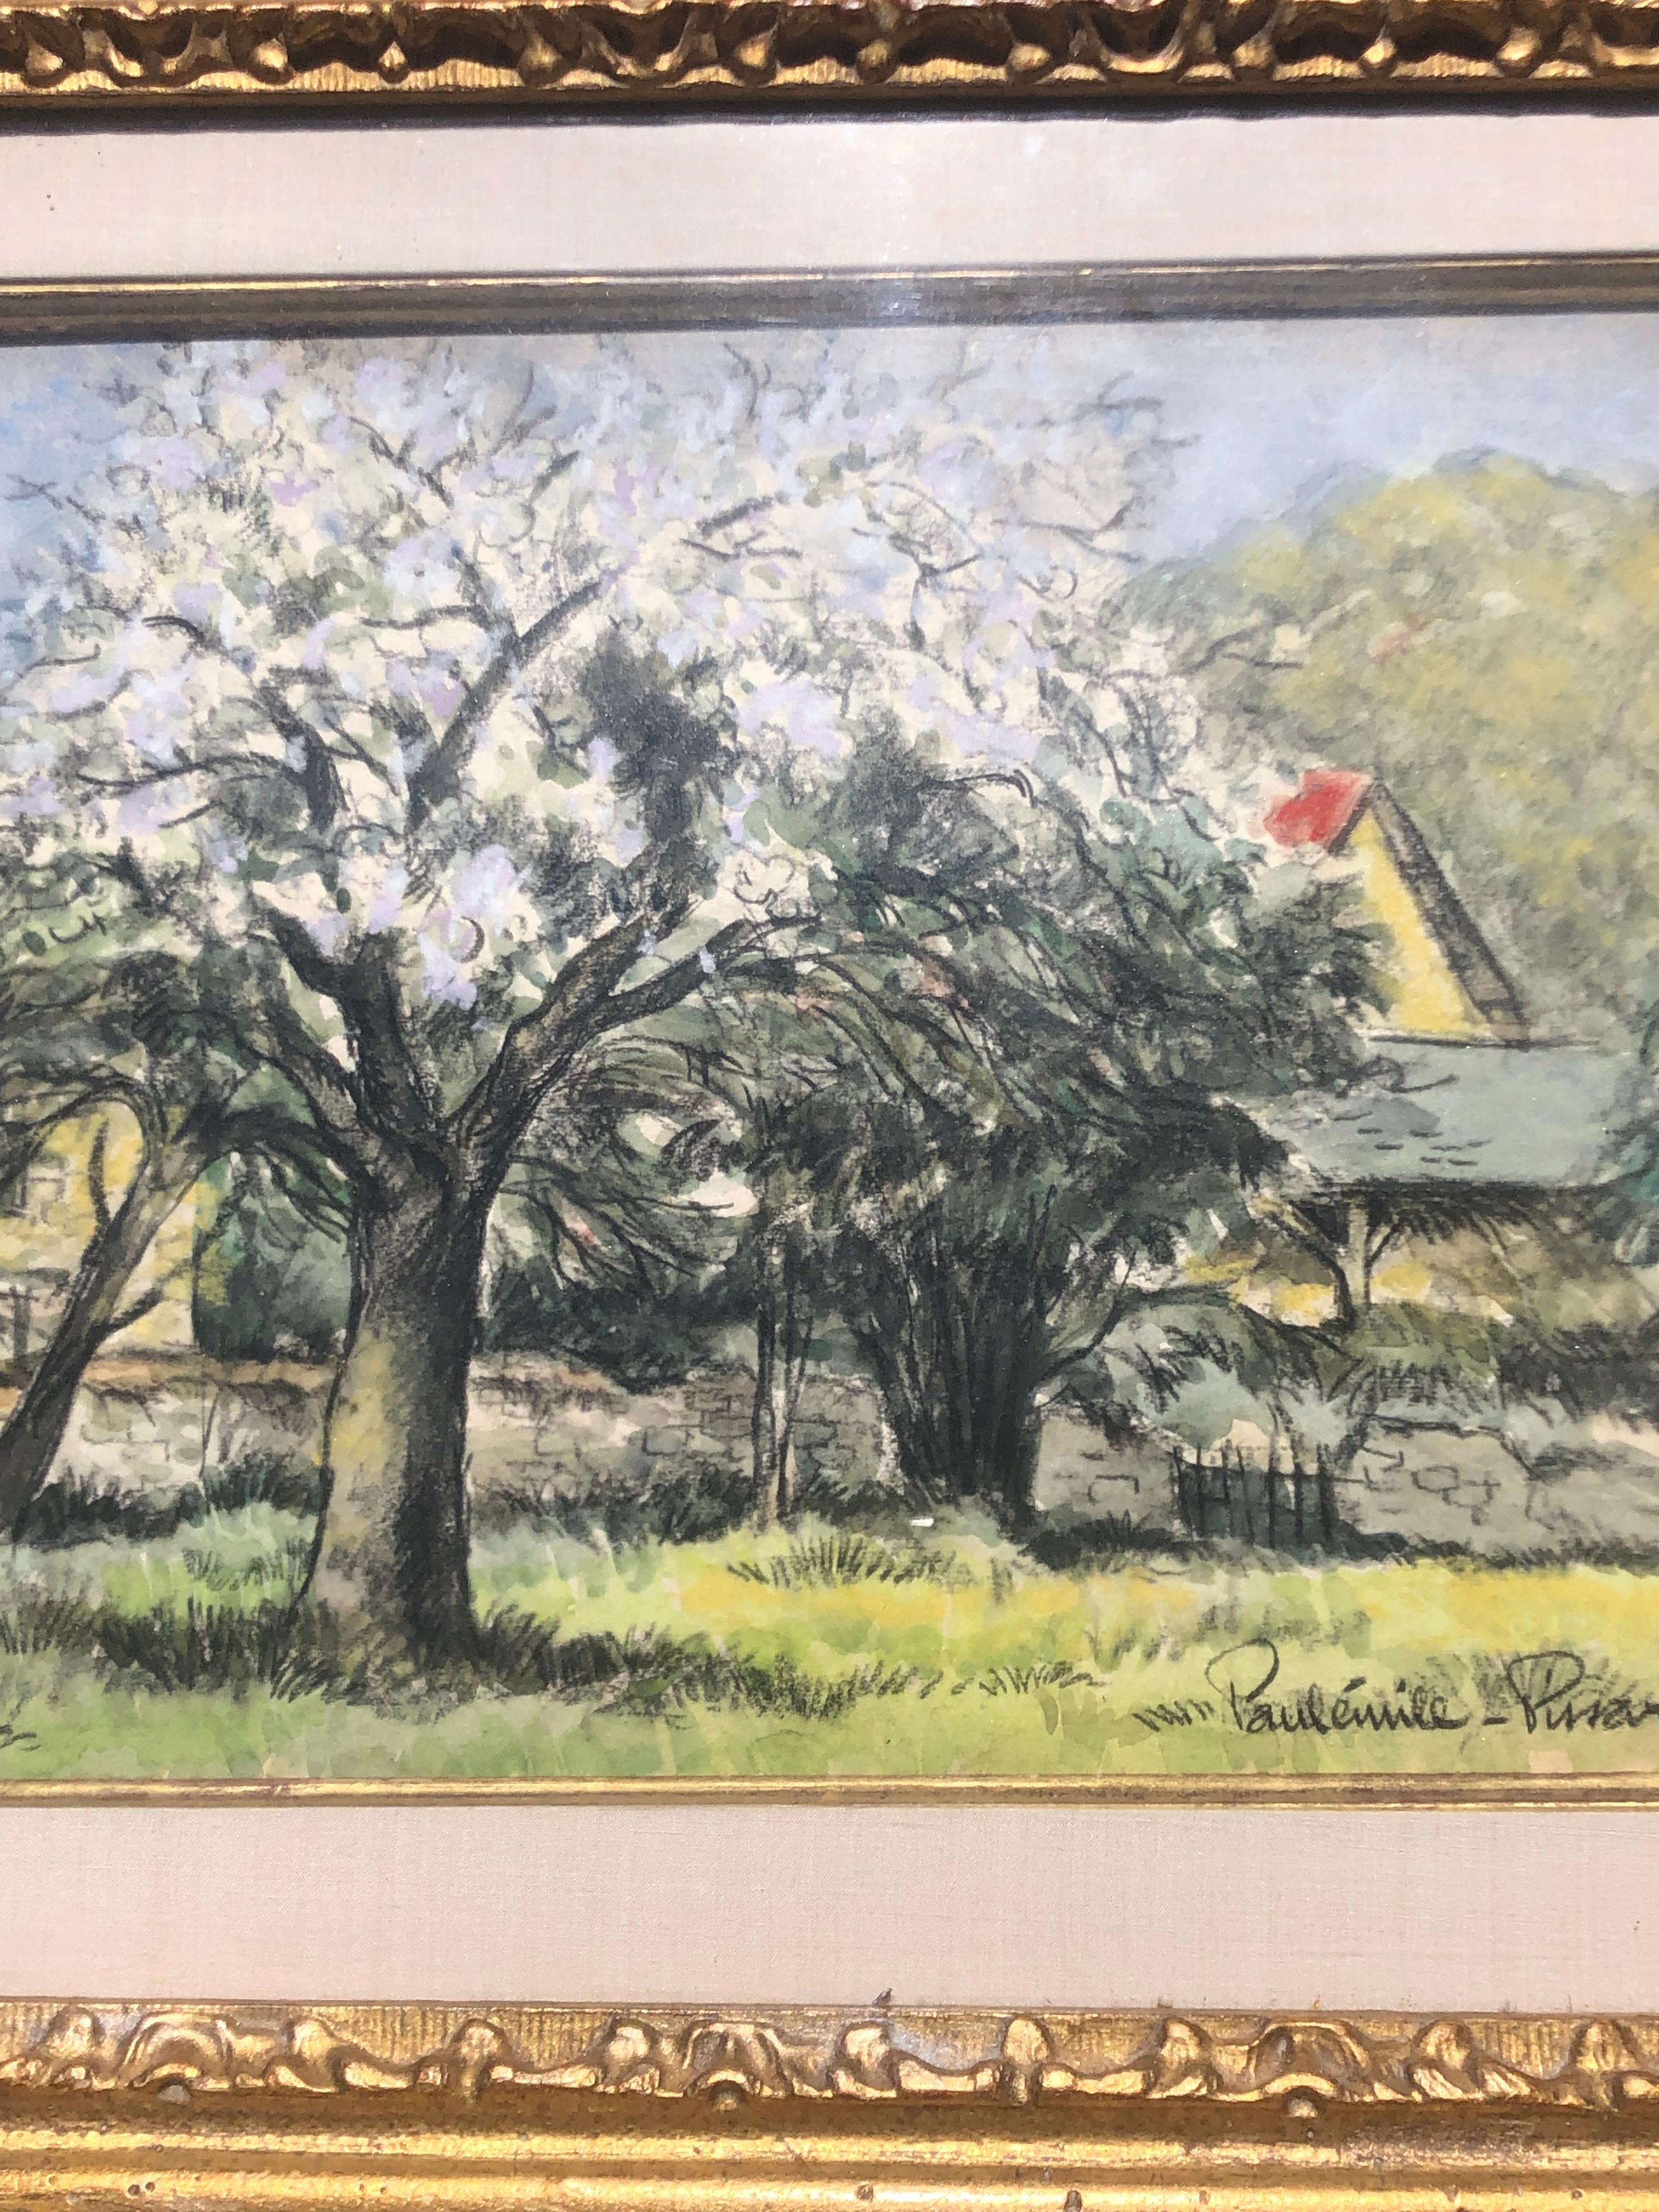 Paysage avec arbres en fleurs
Paul-Emile Pissarro  1884-1972 Français
Format papier 9.5x12.5 sous verre encadré 12x16x1 signé, très bon état. Le support a été remplacé par un nouveau carton sans acide.
 Paulémile Pissarro, le plus jeune fils de